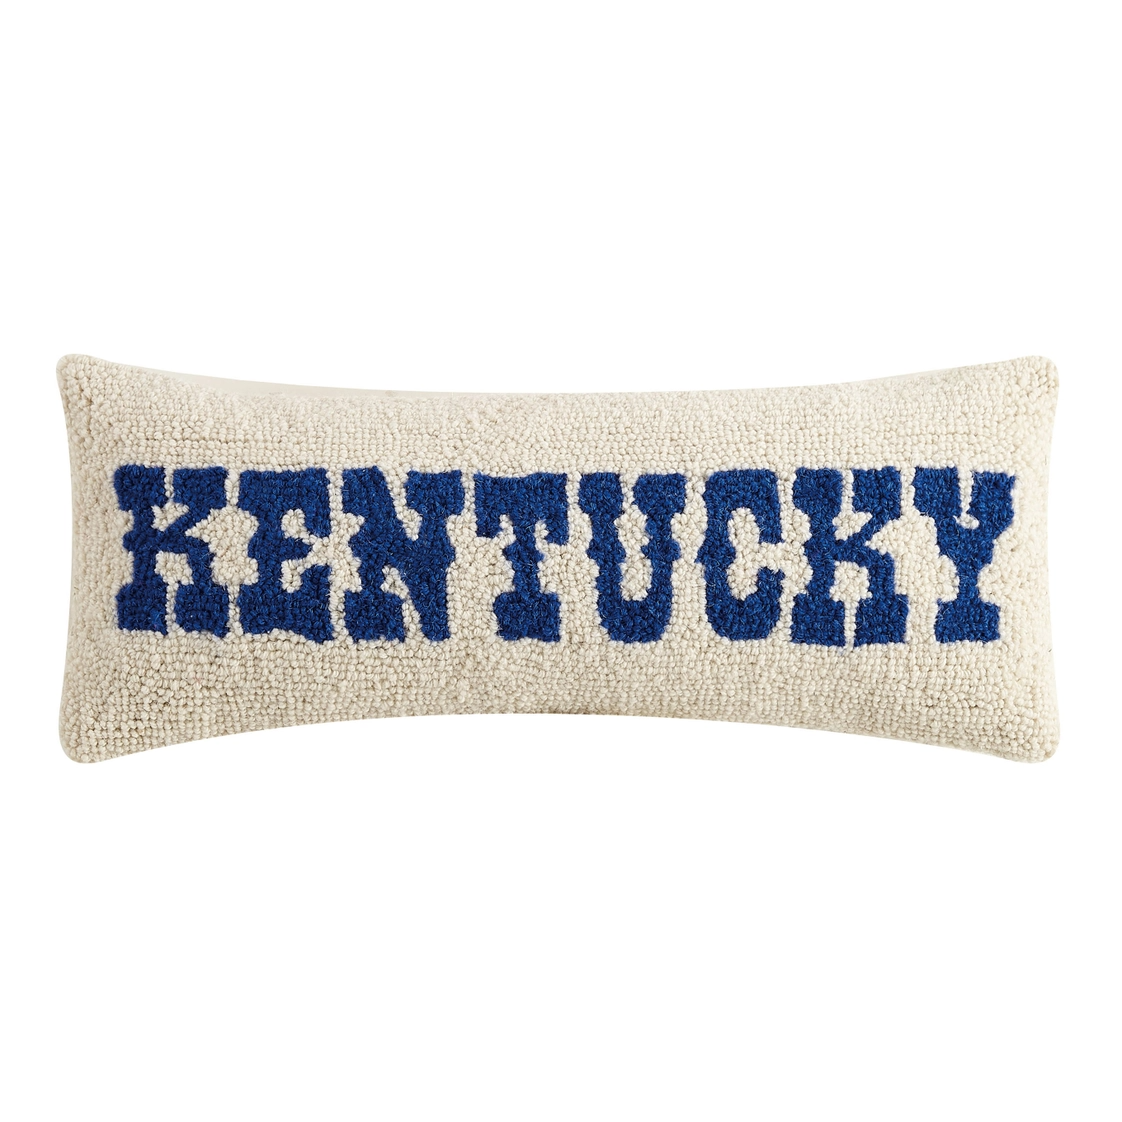 Needlepoint Kentucky Pillow